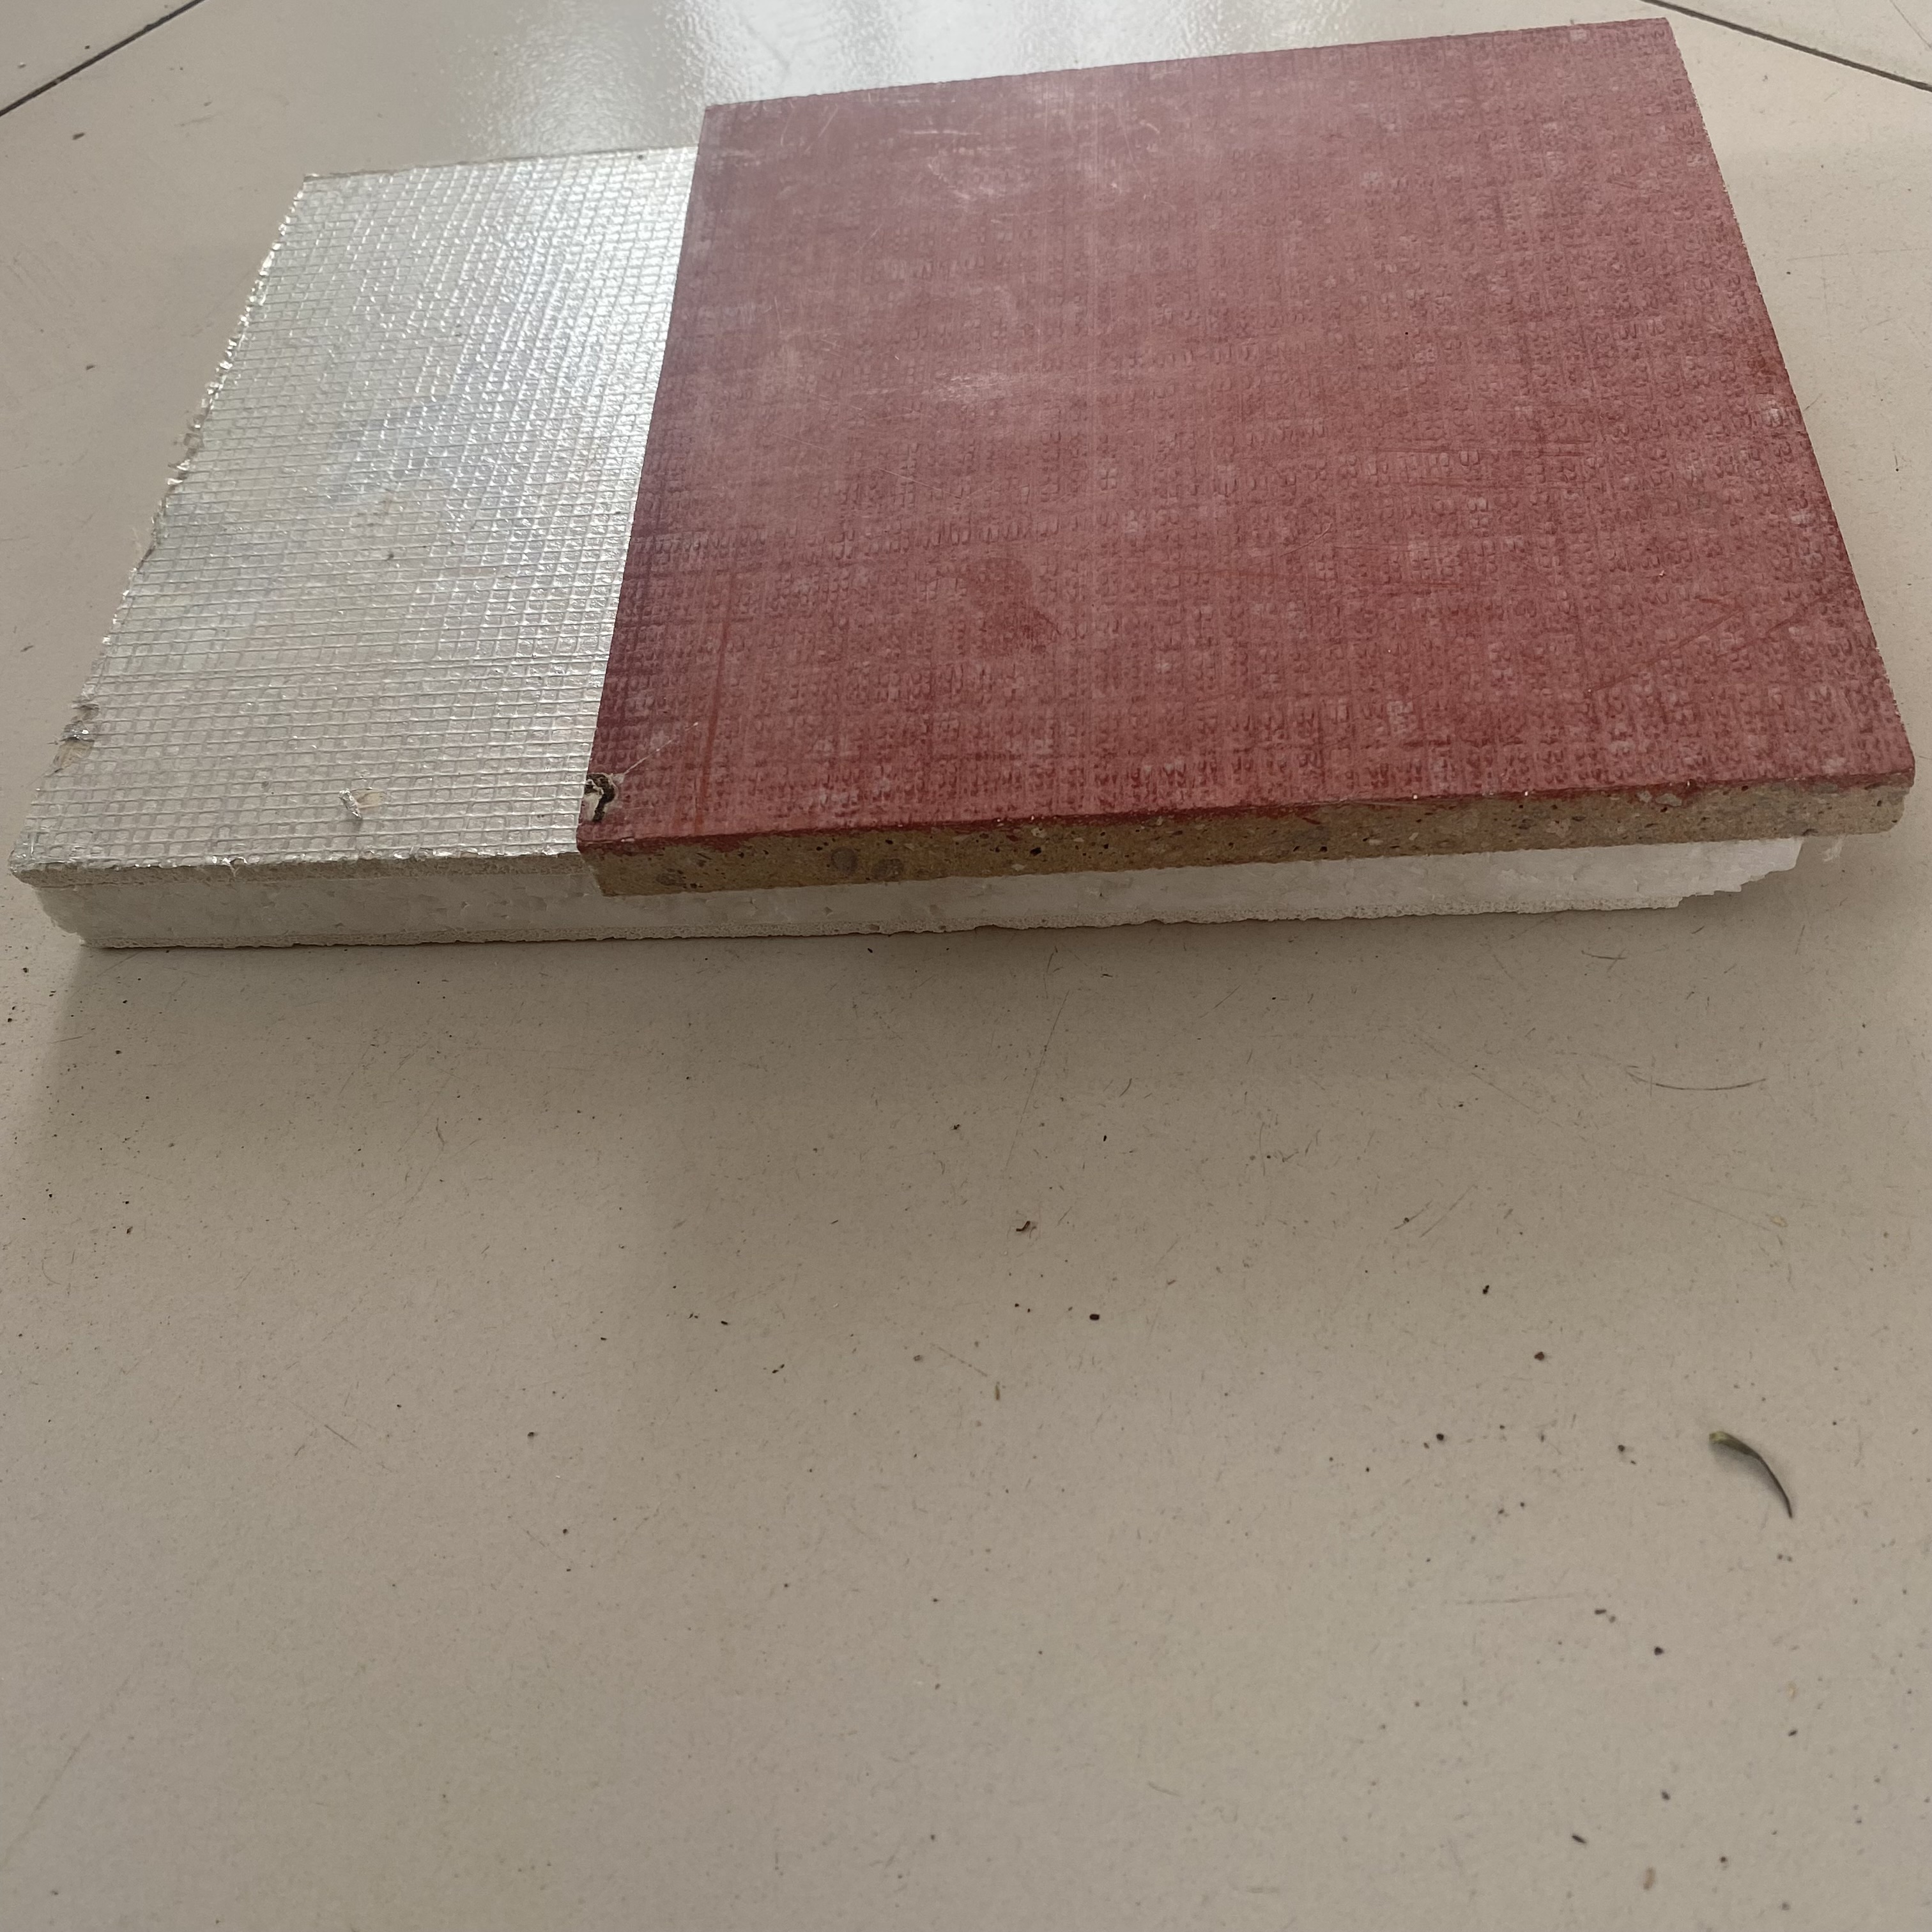 嘉禾jiahe-06建筑模板免拆一体板设备保温结构型基板挤塑板复合外墙生产线